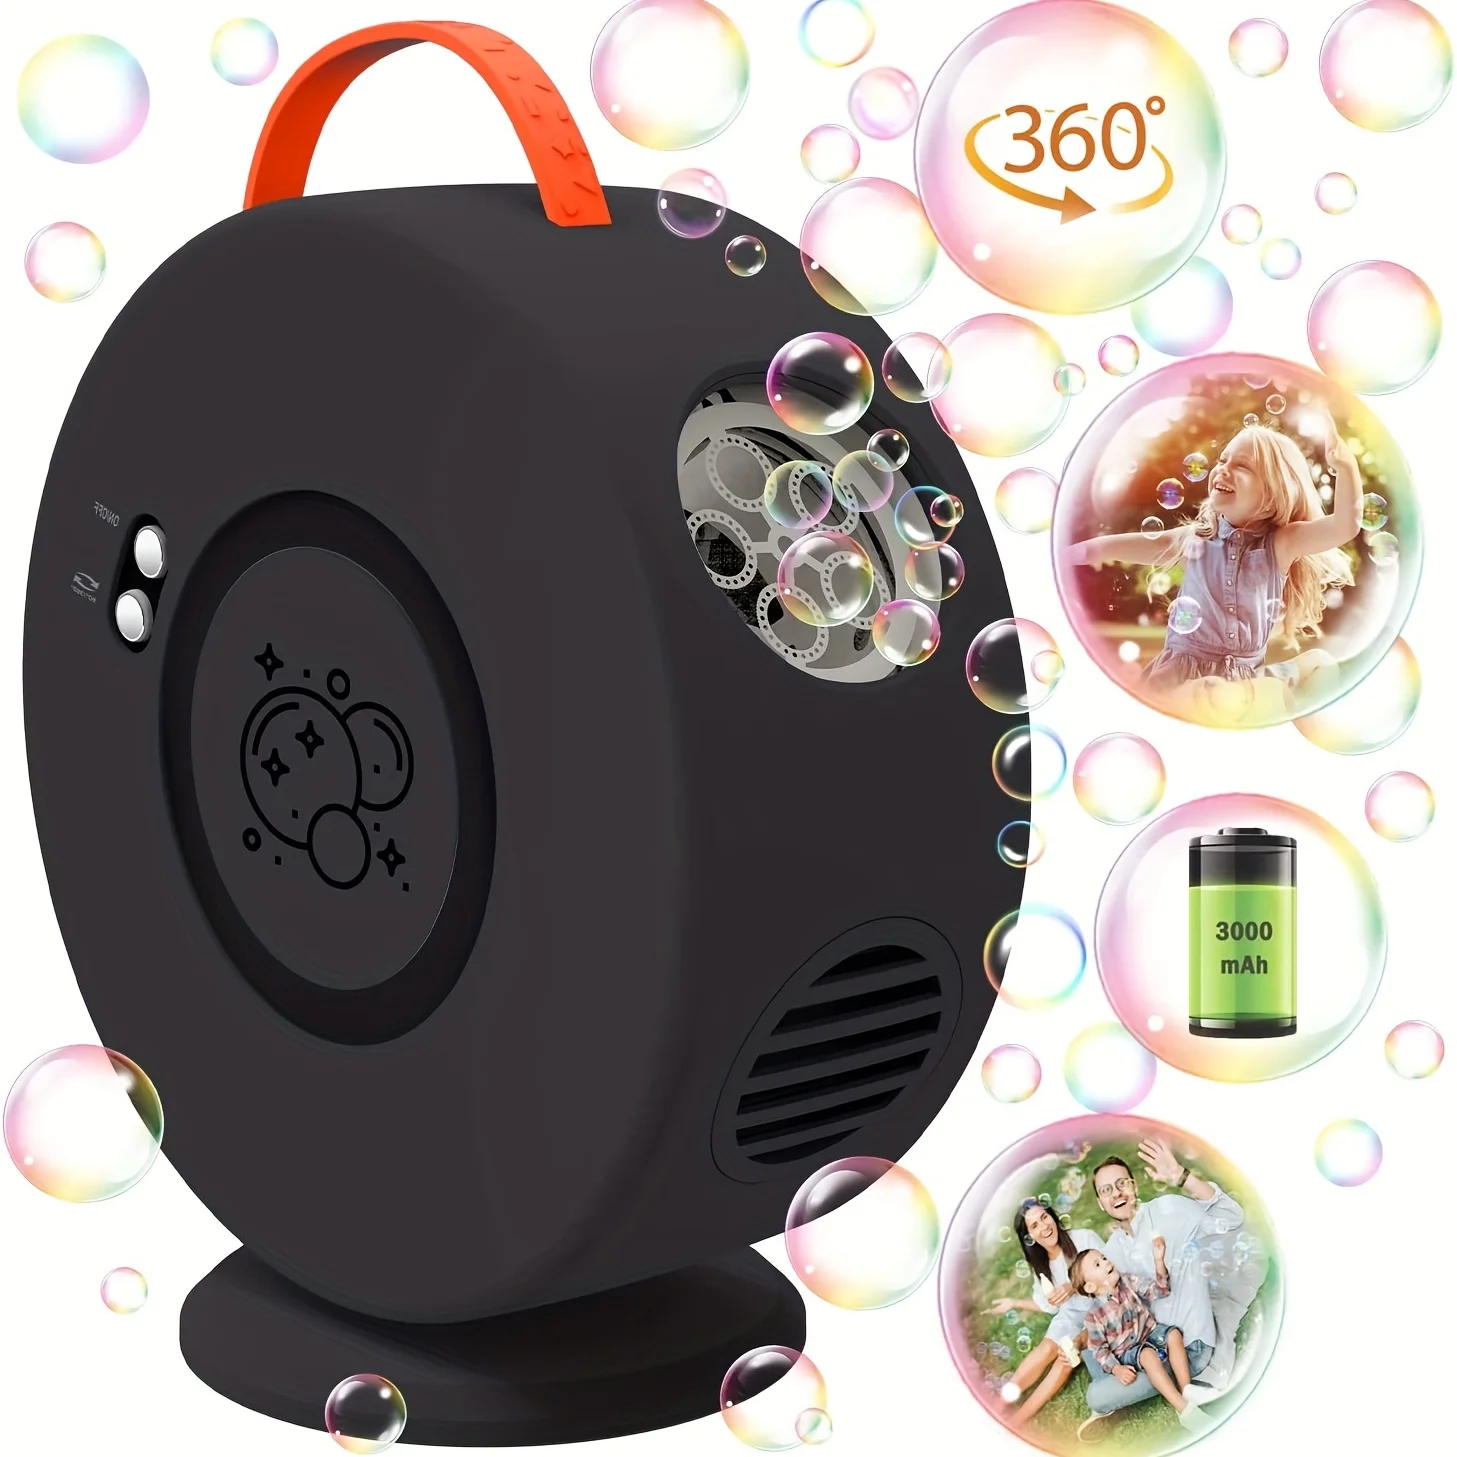 

Bubble Machine Automatic Bubble Blower Rechargeable, 90° 360° Auto Rotatable Portable Bubble Maker Electric Bubbles Toy for Kids